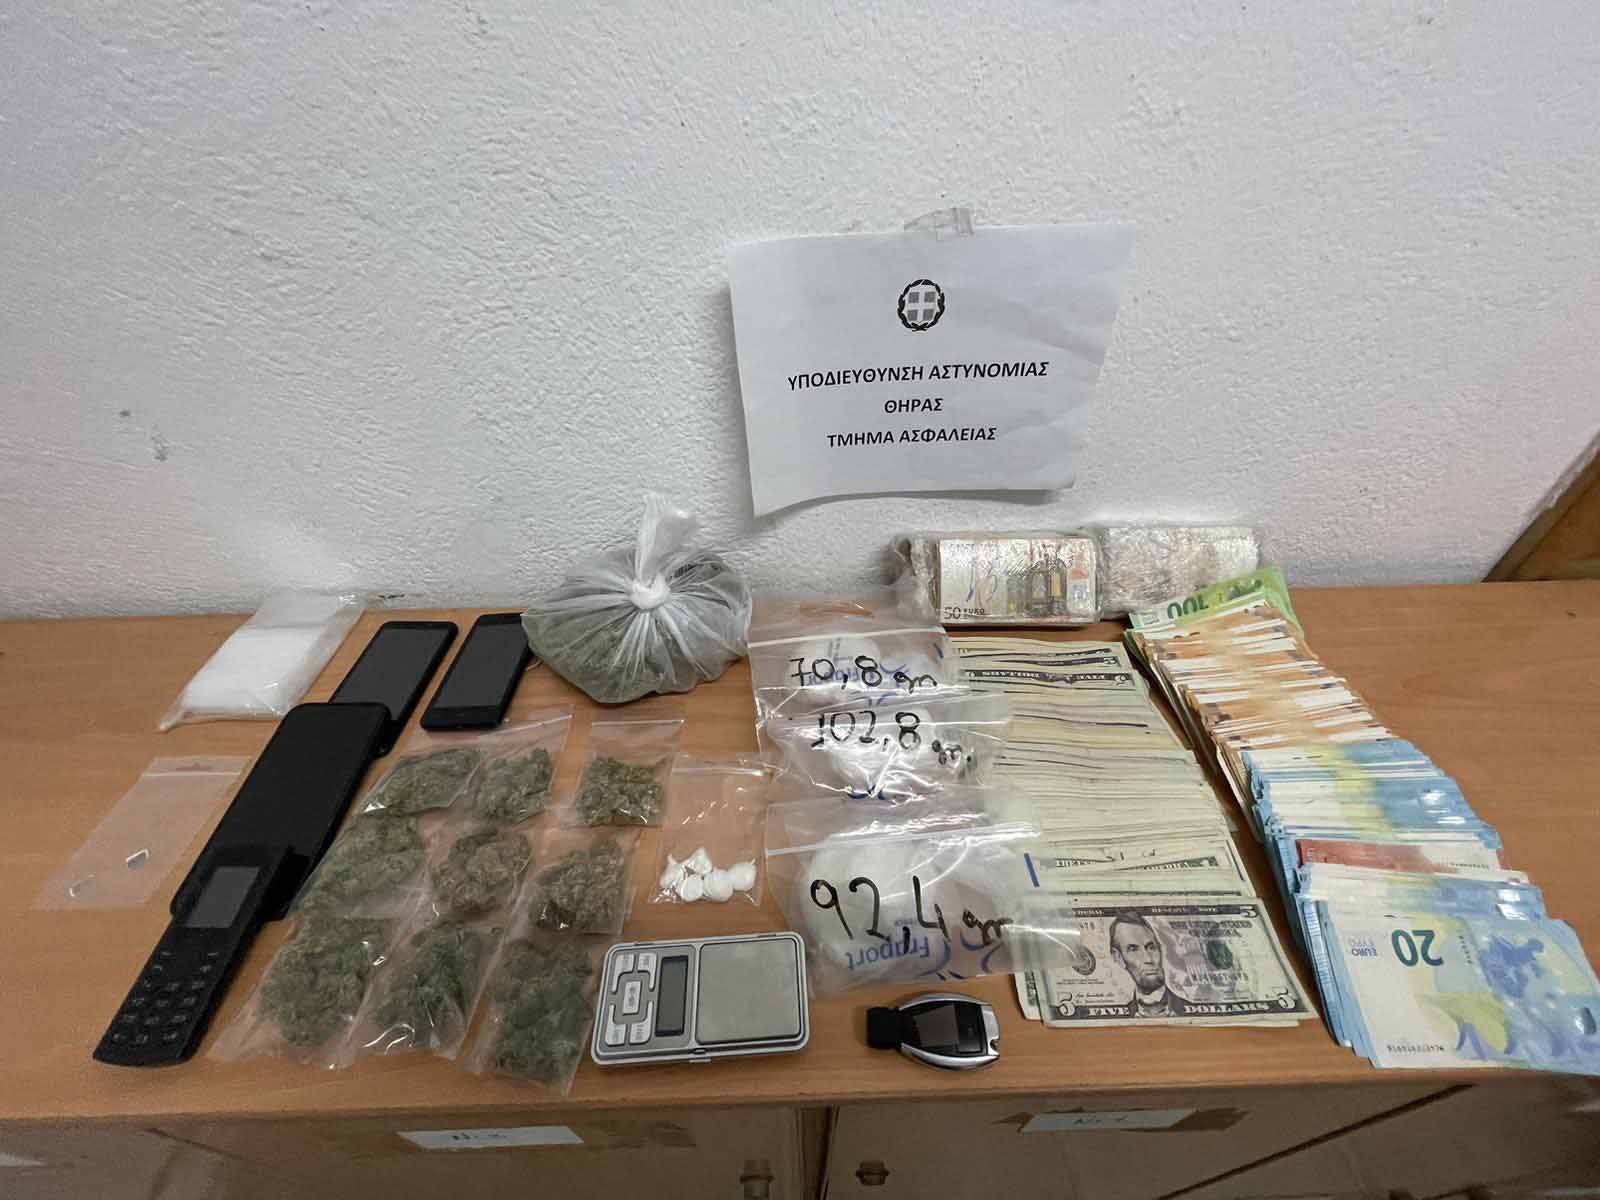 Σαντορίνη: Συνελήφθη άνδρας για ναρκωτικά – Επιχείρησε να δωροδοκήσει τους αστυνομικούς για να μη συλληφθεί